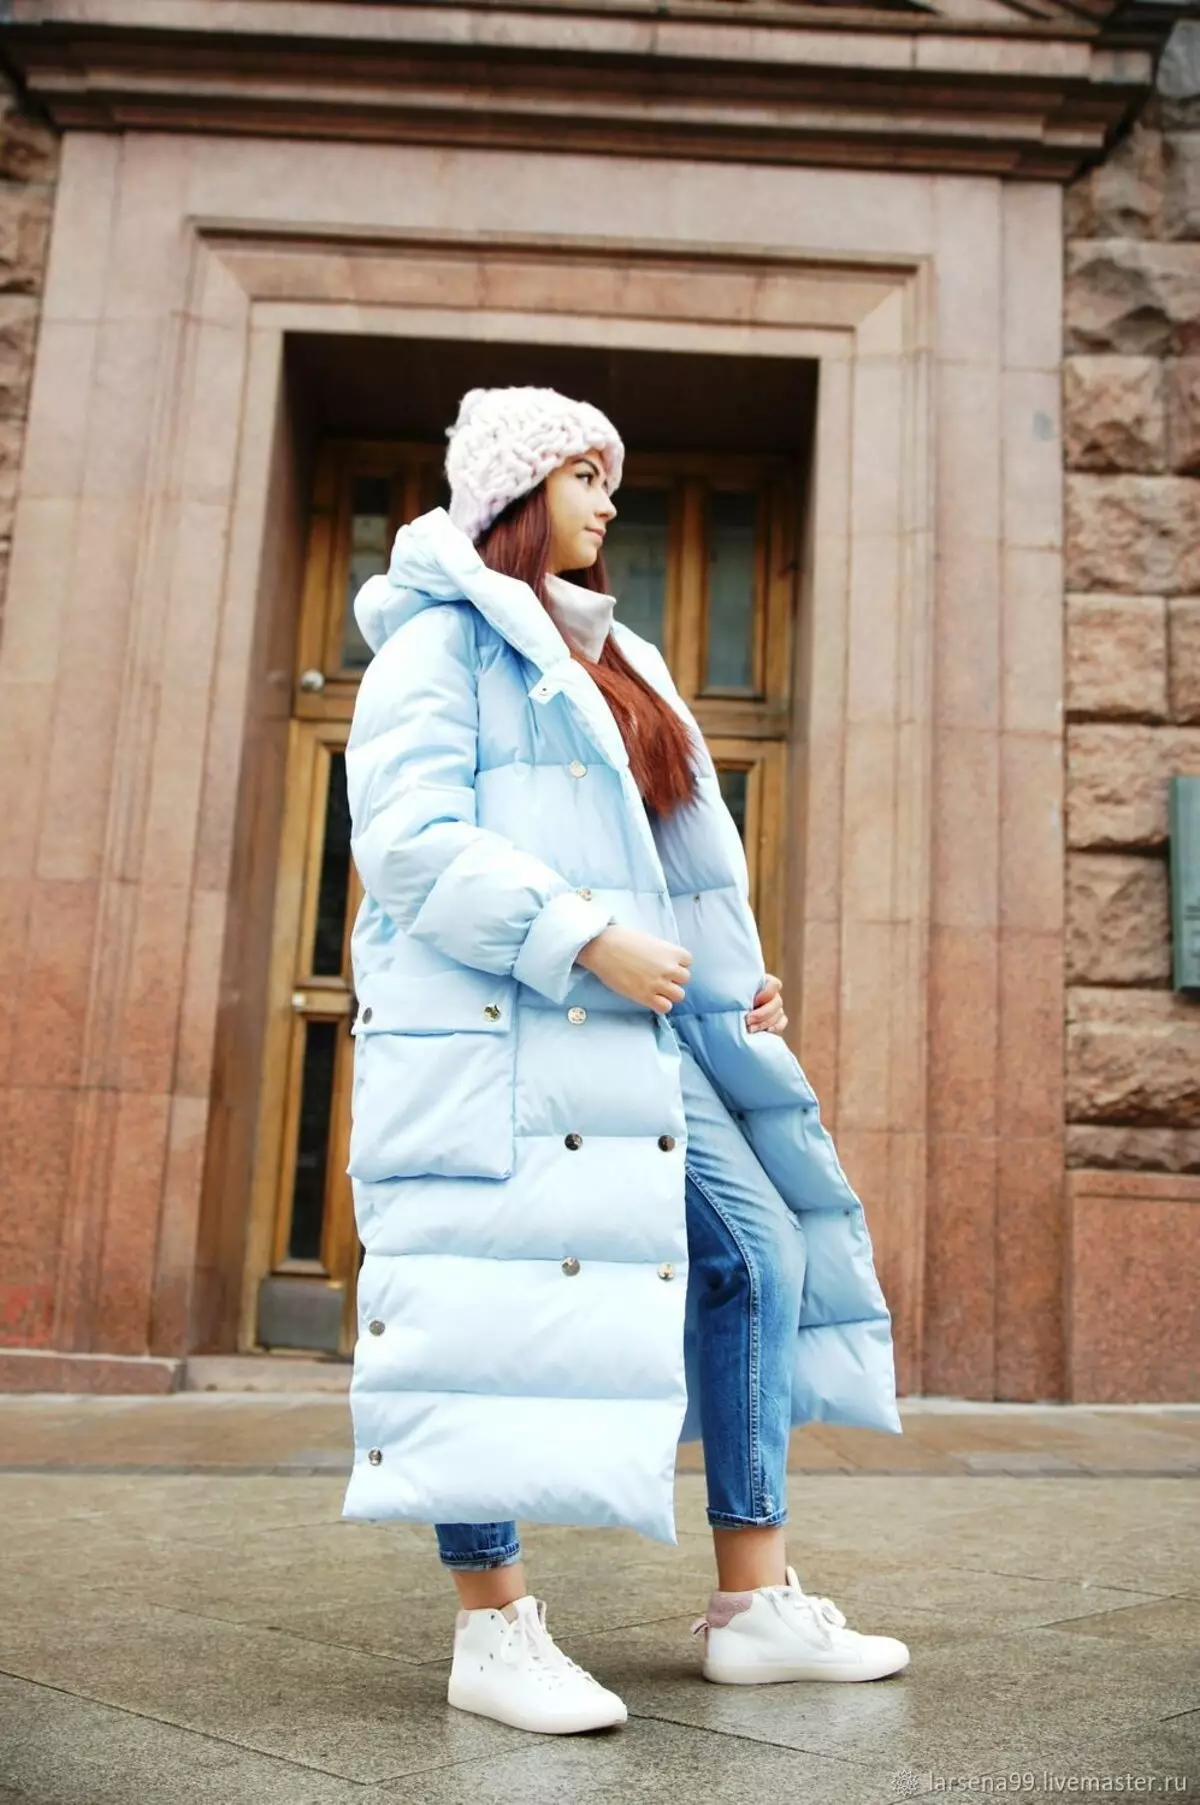 羽毛毯（112张照片）：女式冬季外套和夹克 - 带引擎盖和没有的毯子。穿什么？时尚品牌模型 315_93